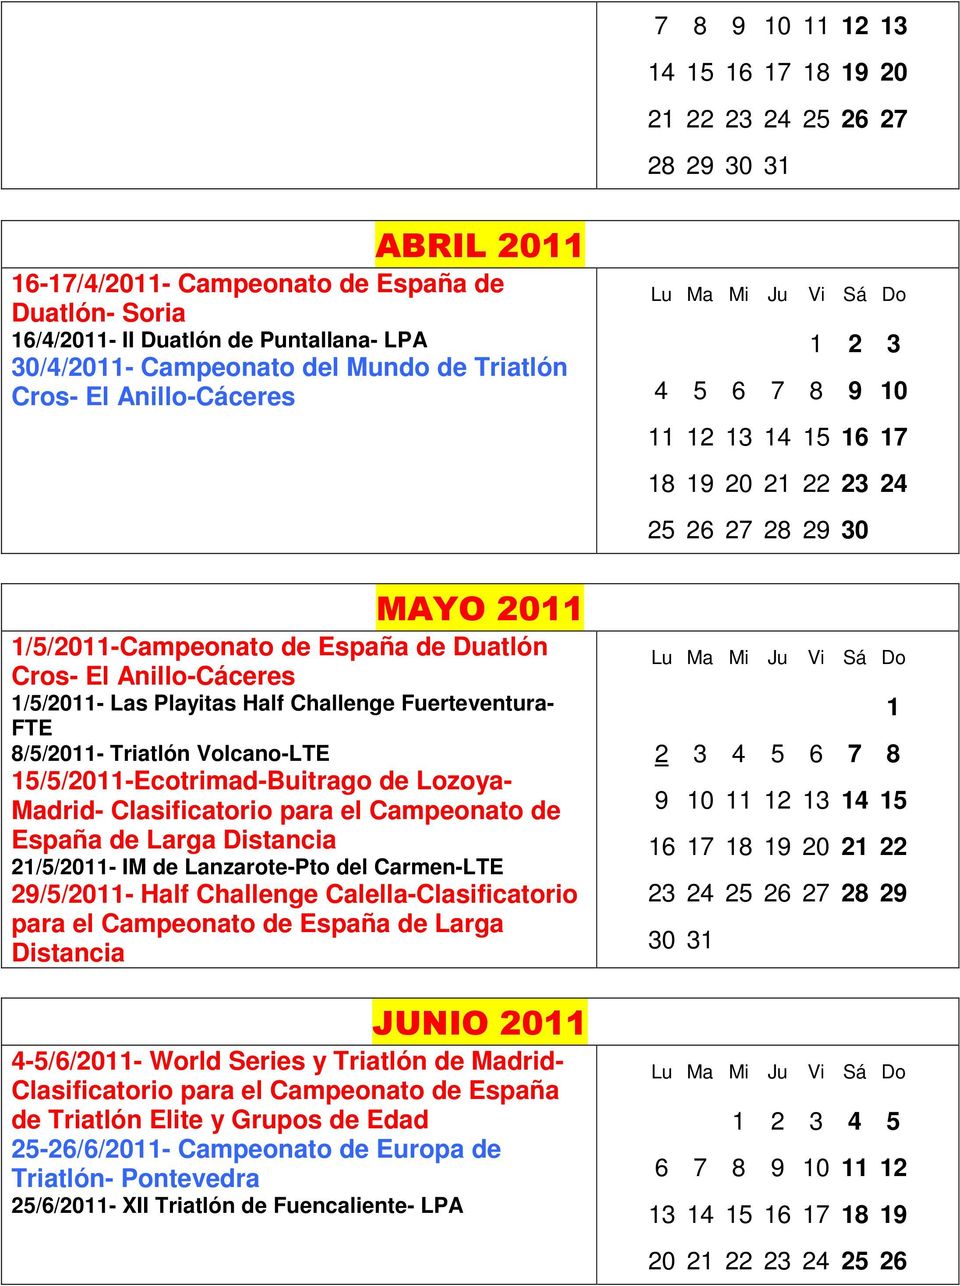 Anillo-Cáceres 1/5/2011- Las Playitas Half Challenge Fuerteventura- FTE 8/5/2011- Triatlón Volcano-LTE 15/5/2011-Ecotrimad-Buitrago de Lozoya- Madrid- Clasificatorio para el Campeonato de España de